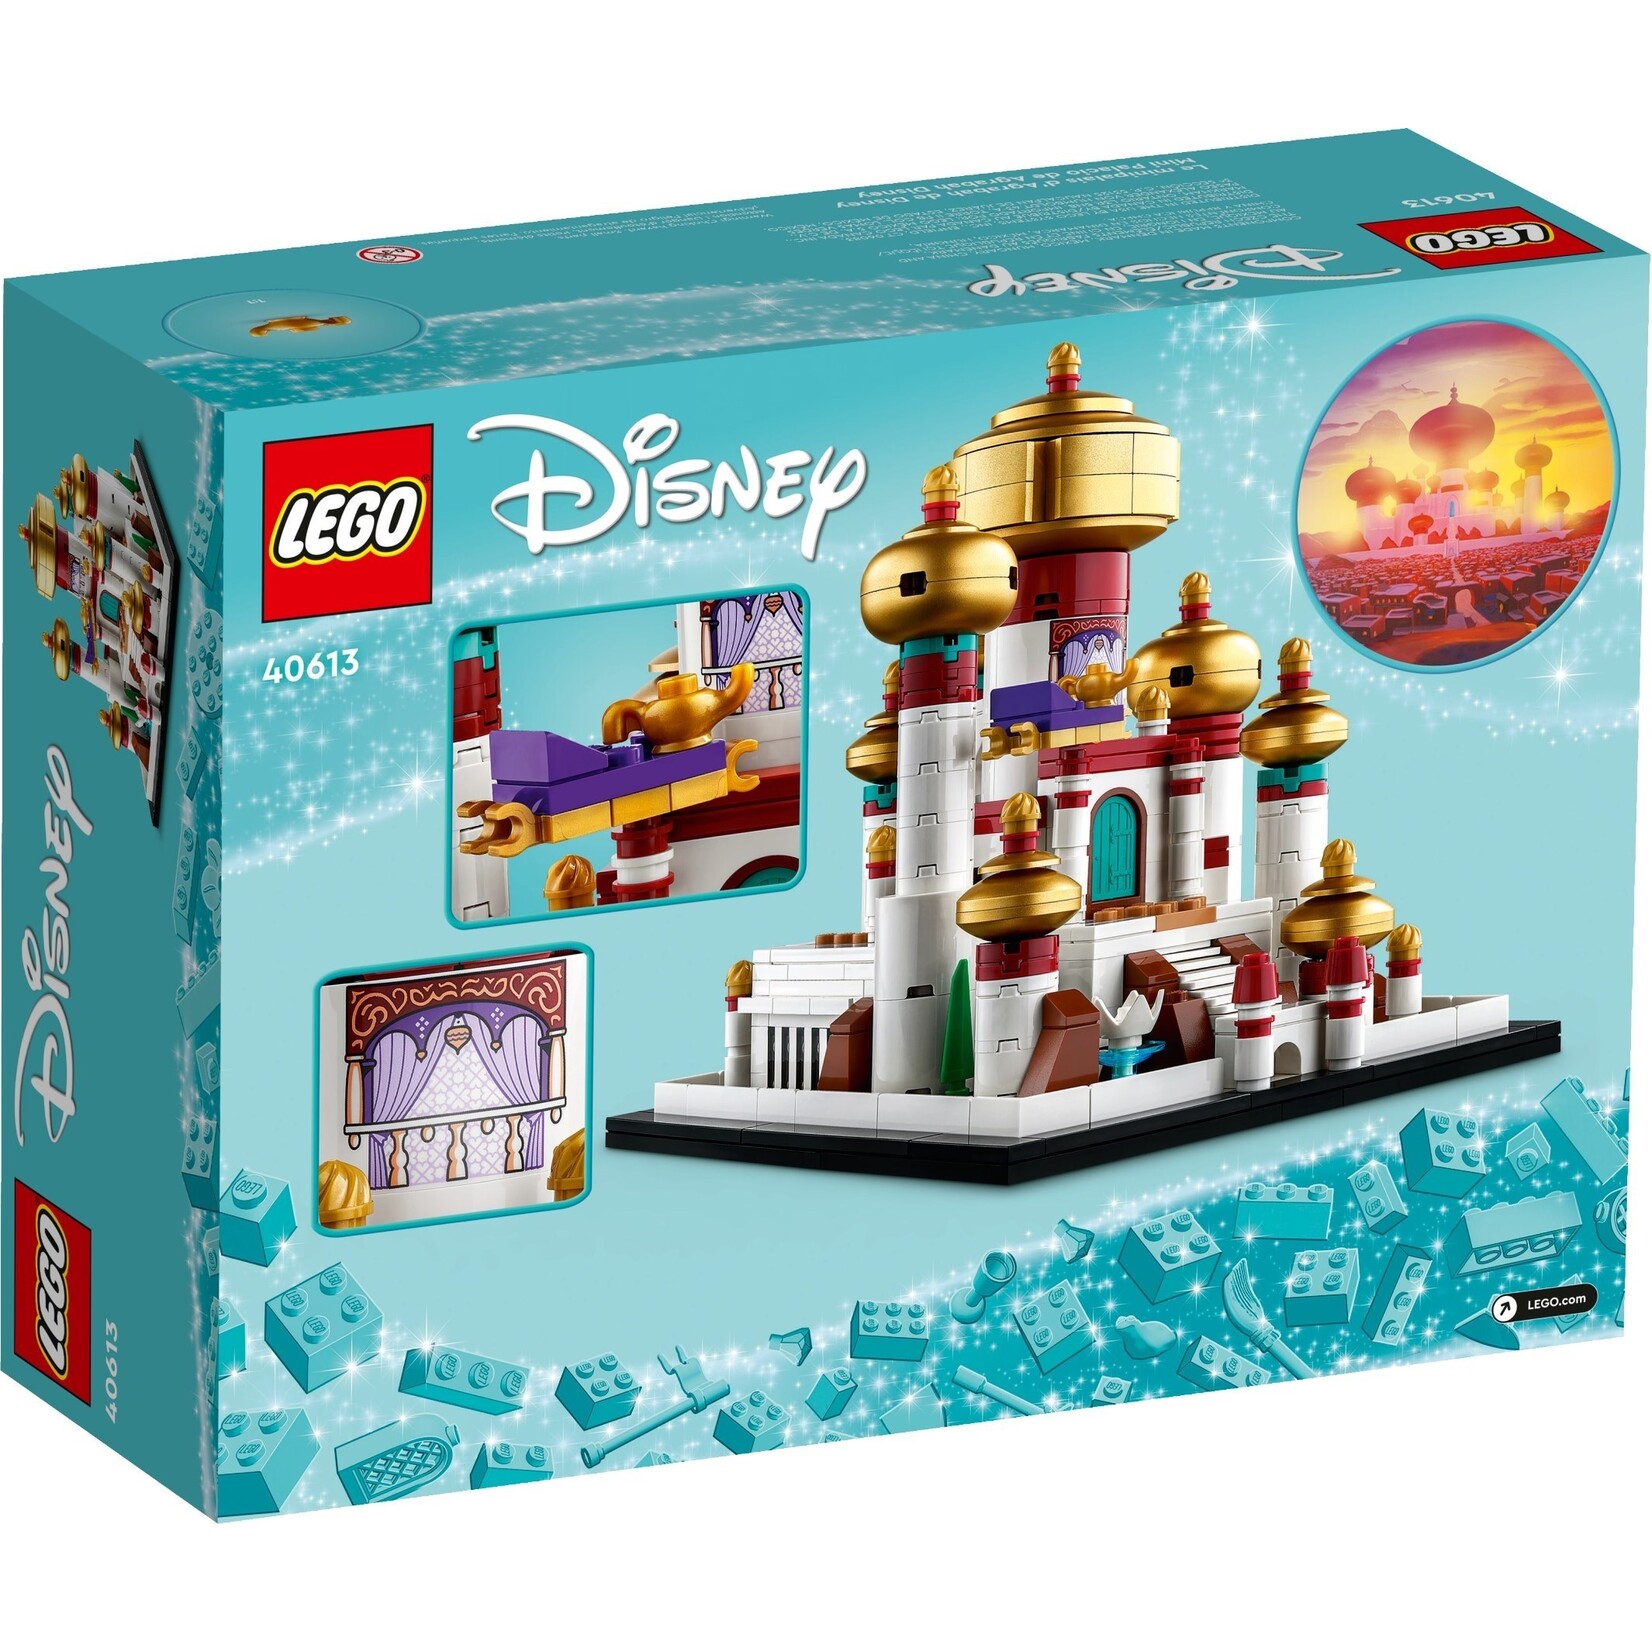 LEGO Disney MINI Paleis van Agrabah - 40613